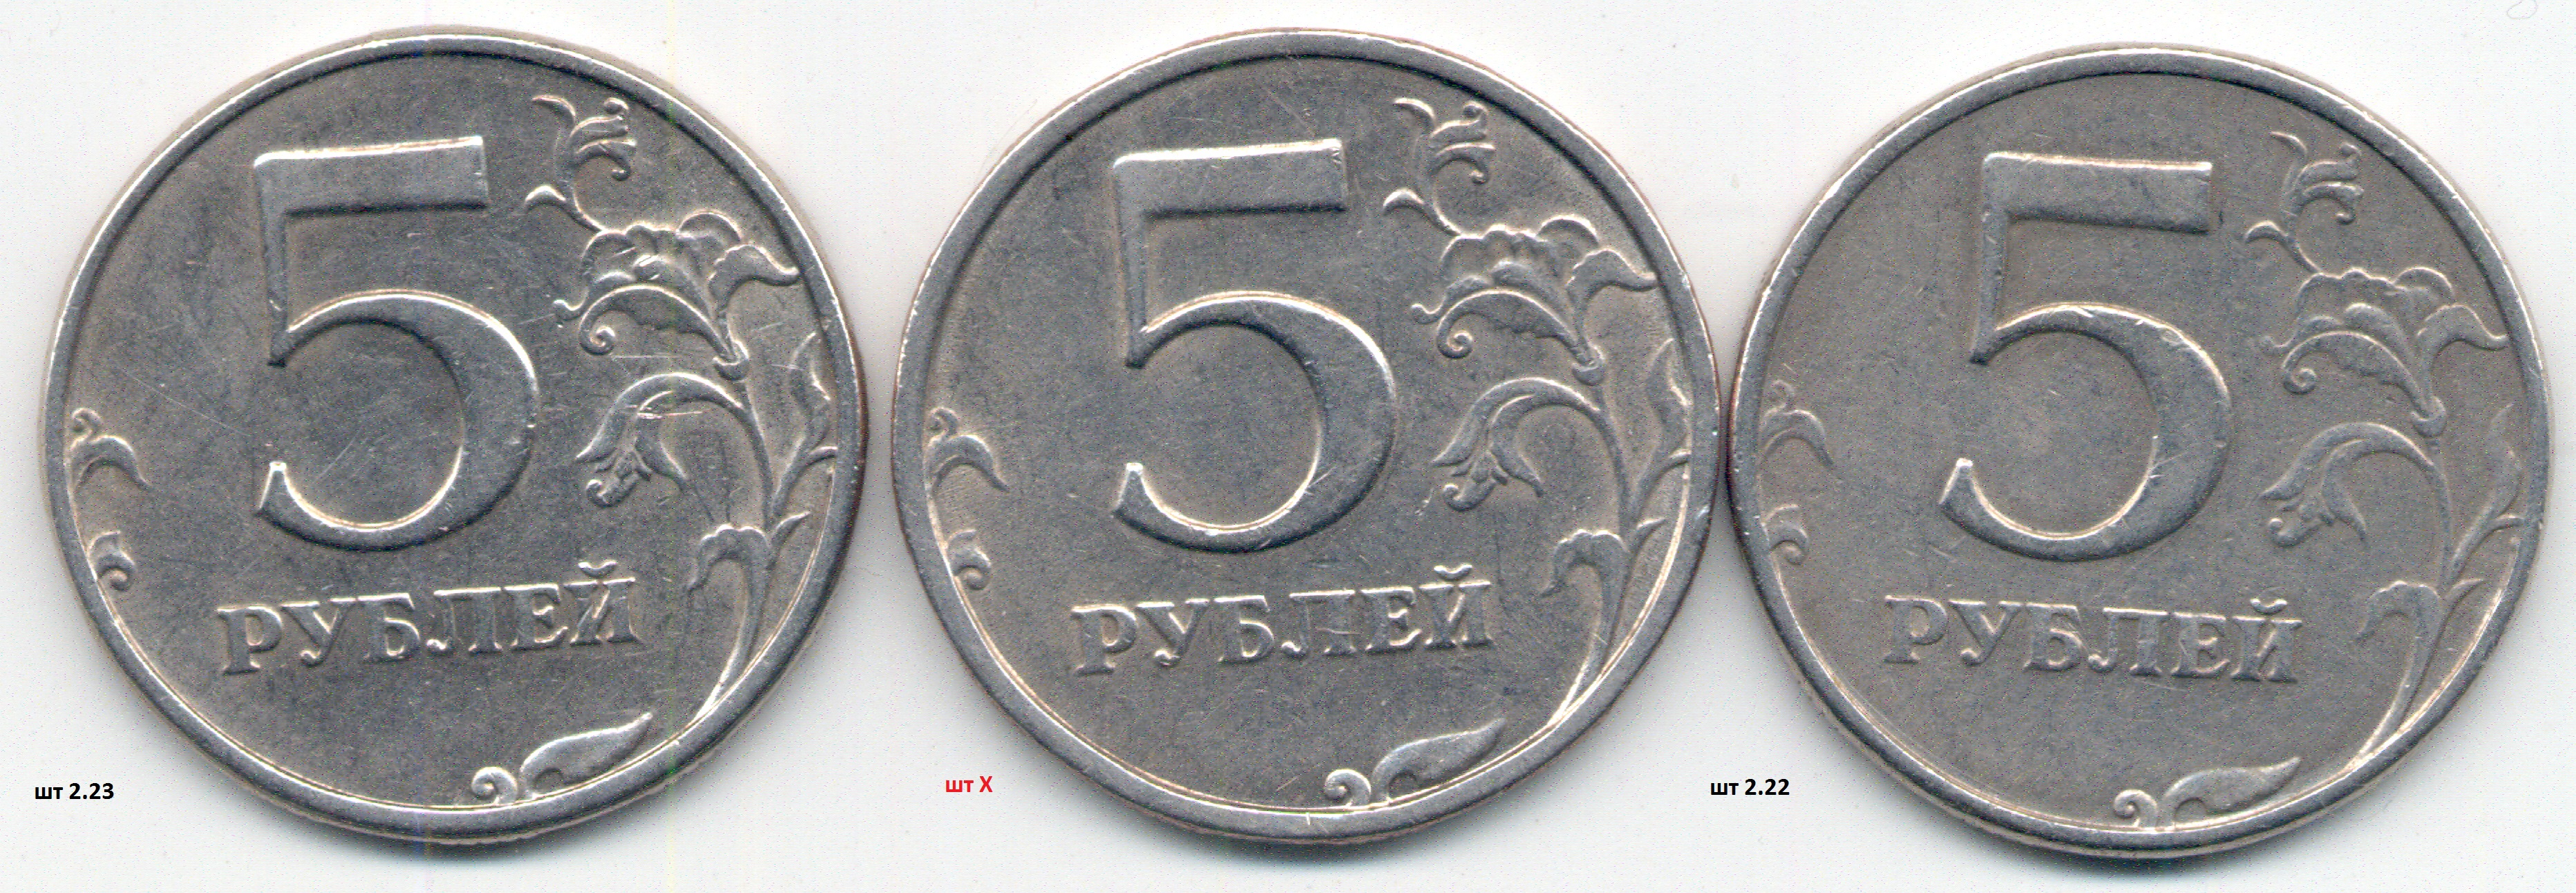 5 рублей 13 года. 5р 1997г СПМД. 5р 1997. Монета 5 рублей 2009 без борта. 13 Рублей 1998 года.